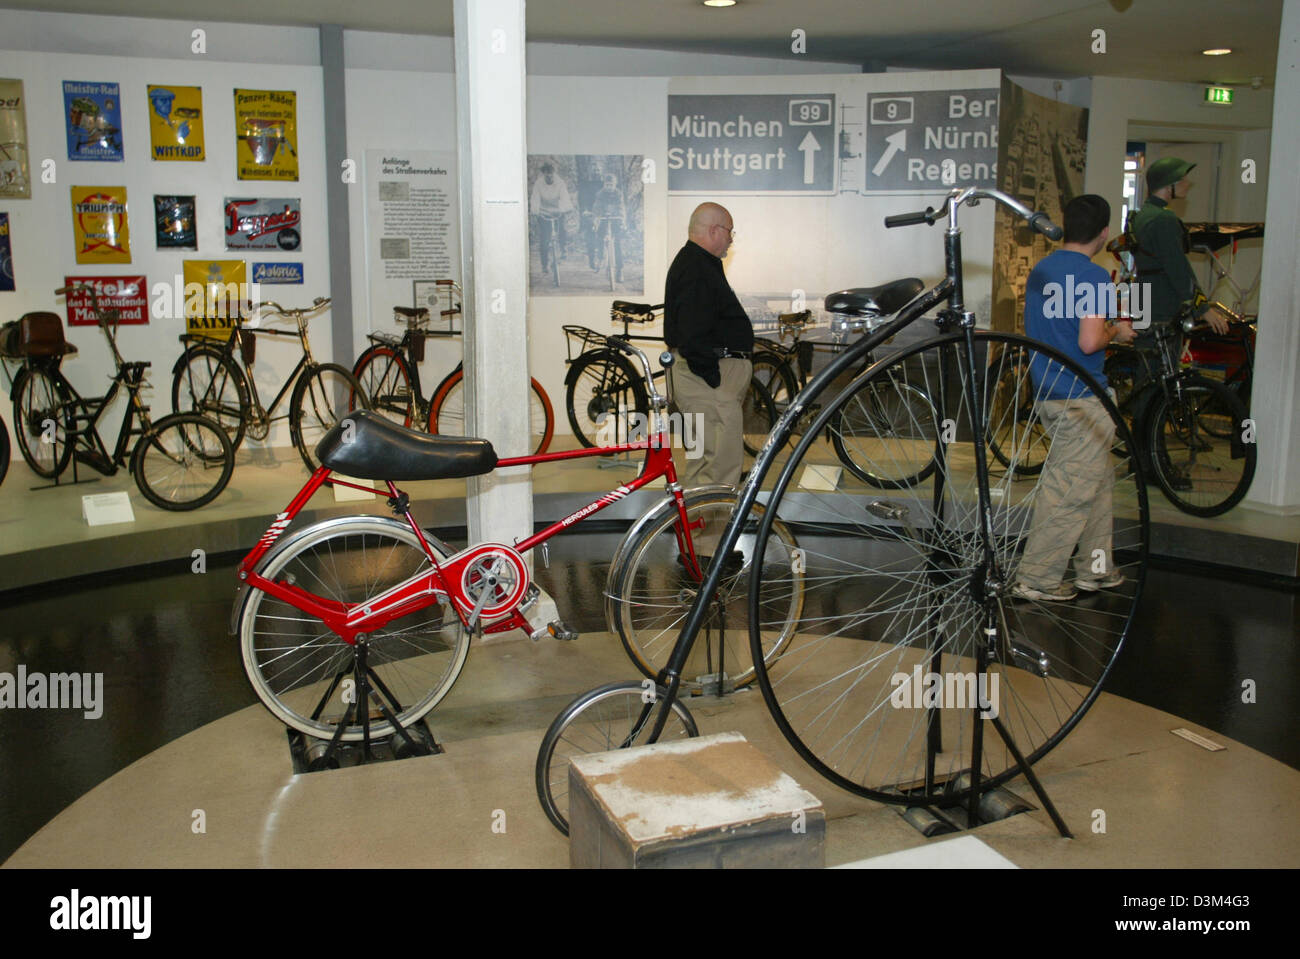 (Dpa) - visitatori a piedi pass mostrava le biciclette del 'Zweirad Museum', museo per veicoli a due ruote, in Neckarsulm, Germania, 07 novembre 2005. Secondo il management, il museo, che è stato inaugurato nel 1956, ospita la più grande collezione storica di veicoli a due ruote in Germania con circa 400 presenta. Foto: Harry Melchert Foto Stock